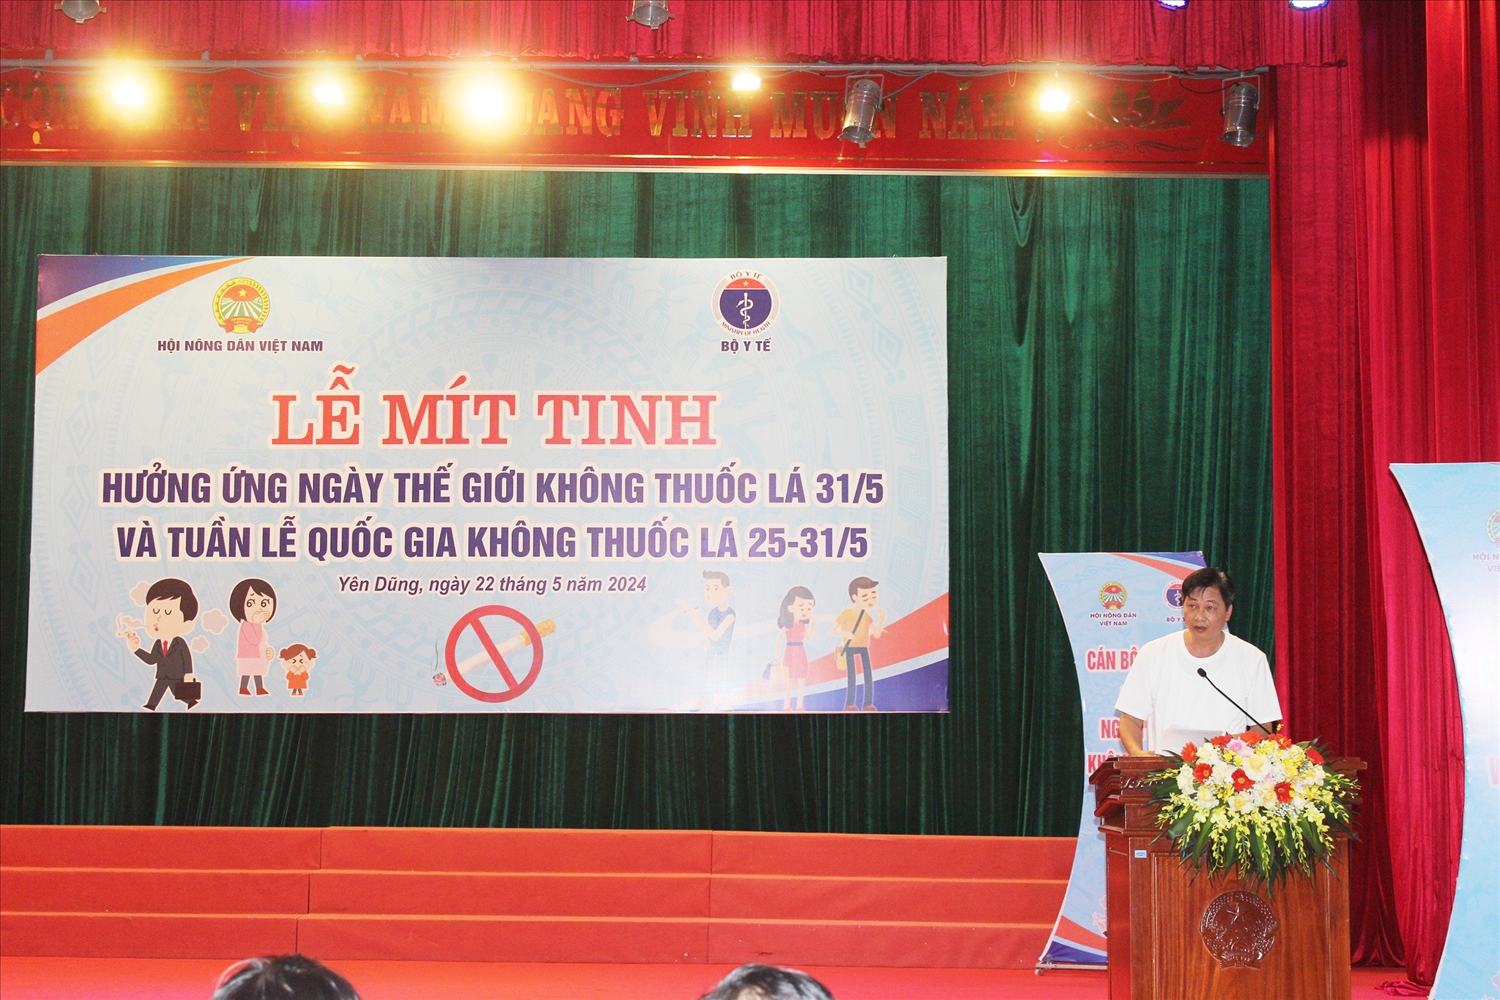 Ông Vũ Quốc Huy - Trưởng ban Xã hội Trung ương Hội Nông dân Việt Na,phát biểu tại Lễ mít tinh 